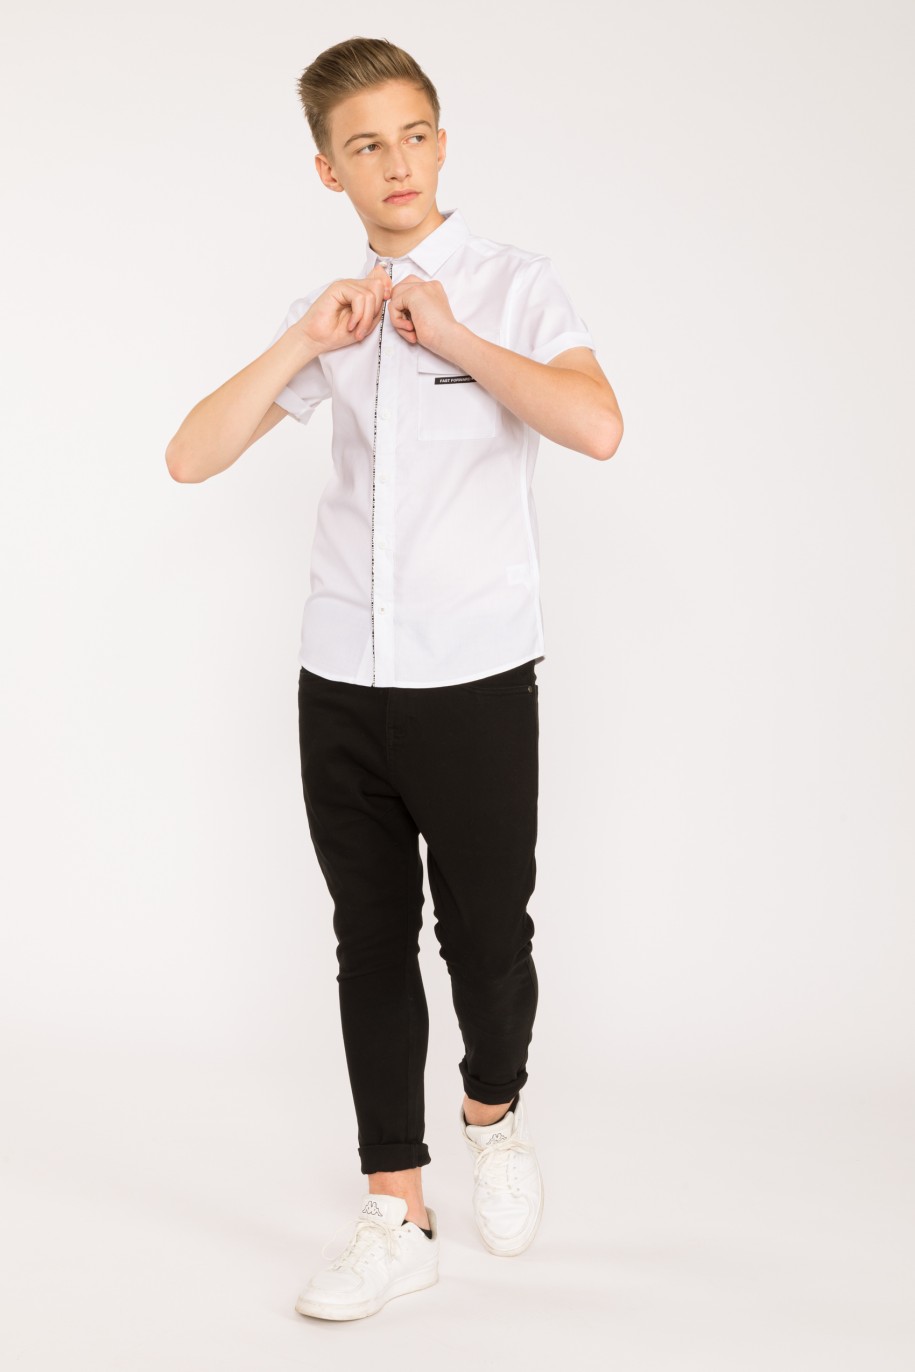 Biała koszula z krótkim rękawem, kieszenią i nadrukiem dla chłopaka - 28436